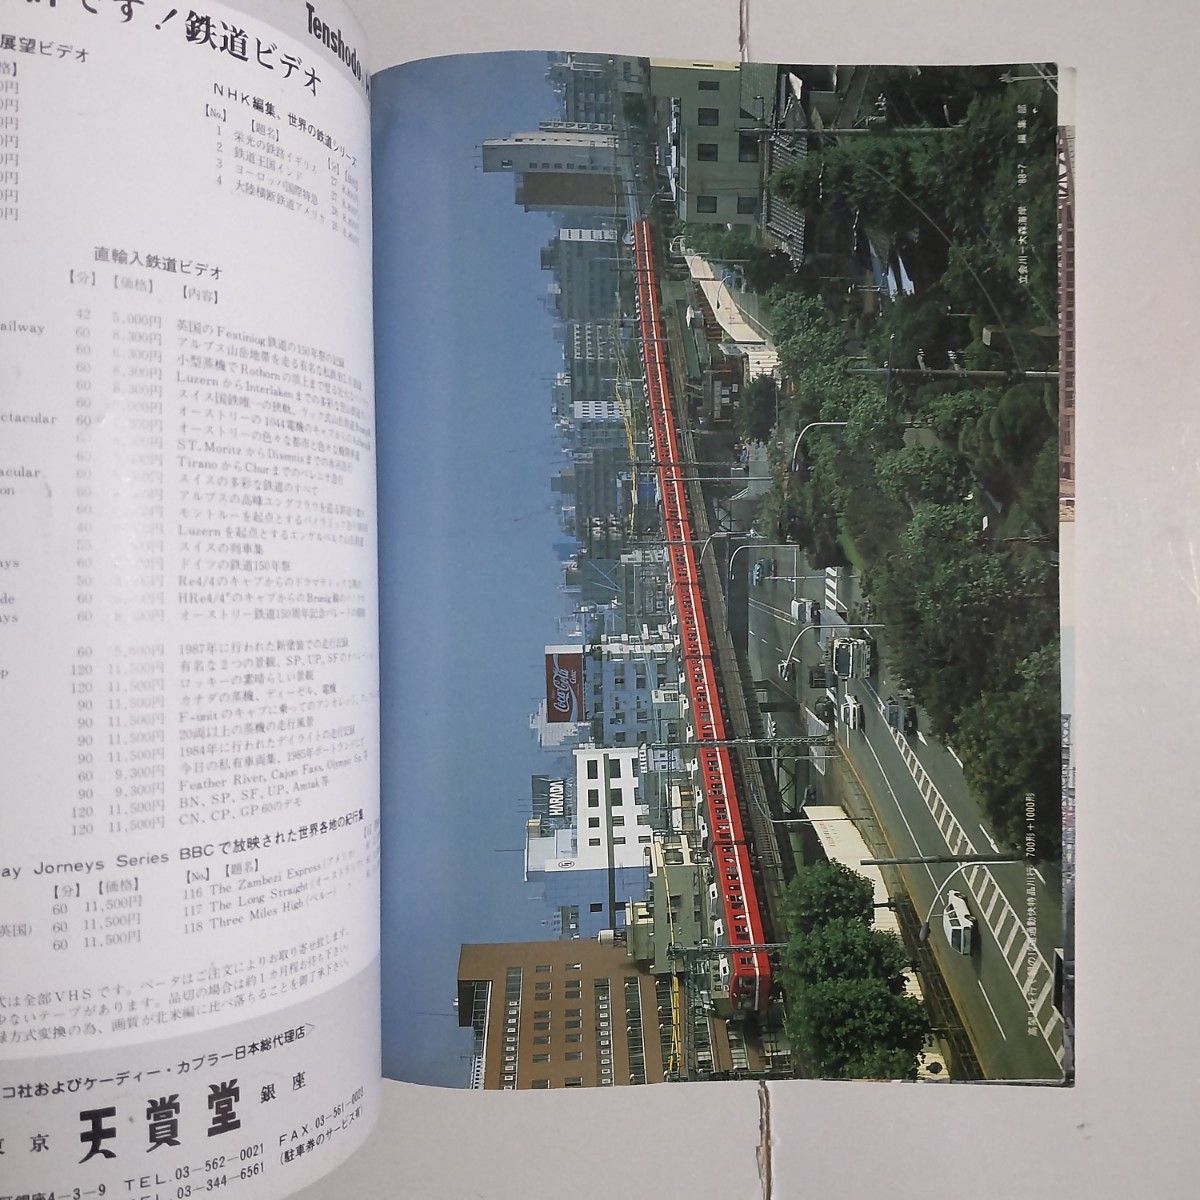 鉄道ピクトリアル 1988年9月号 臨時増刊号